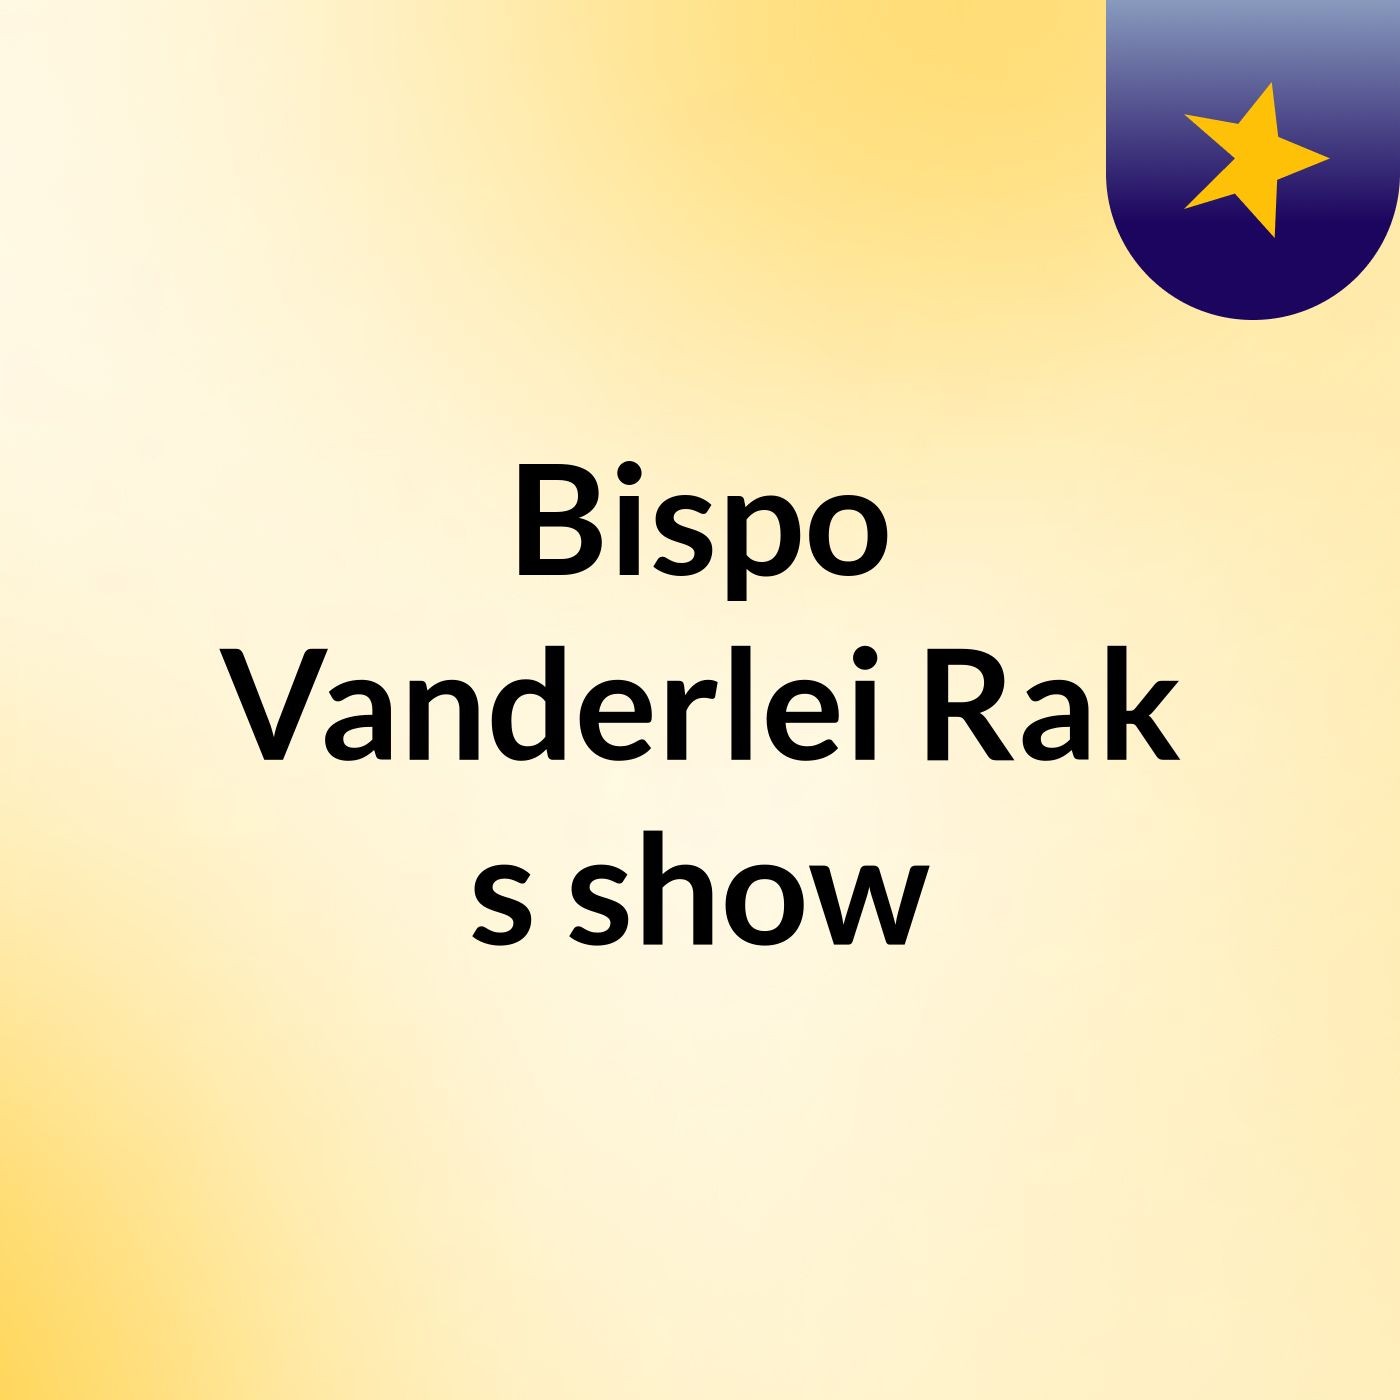 Bispo Vanderlei Rak's show